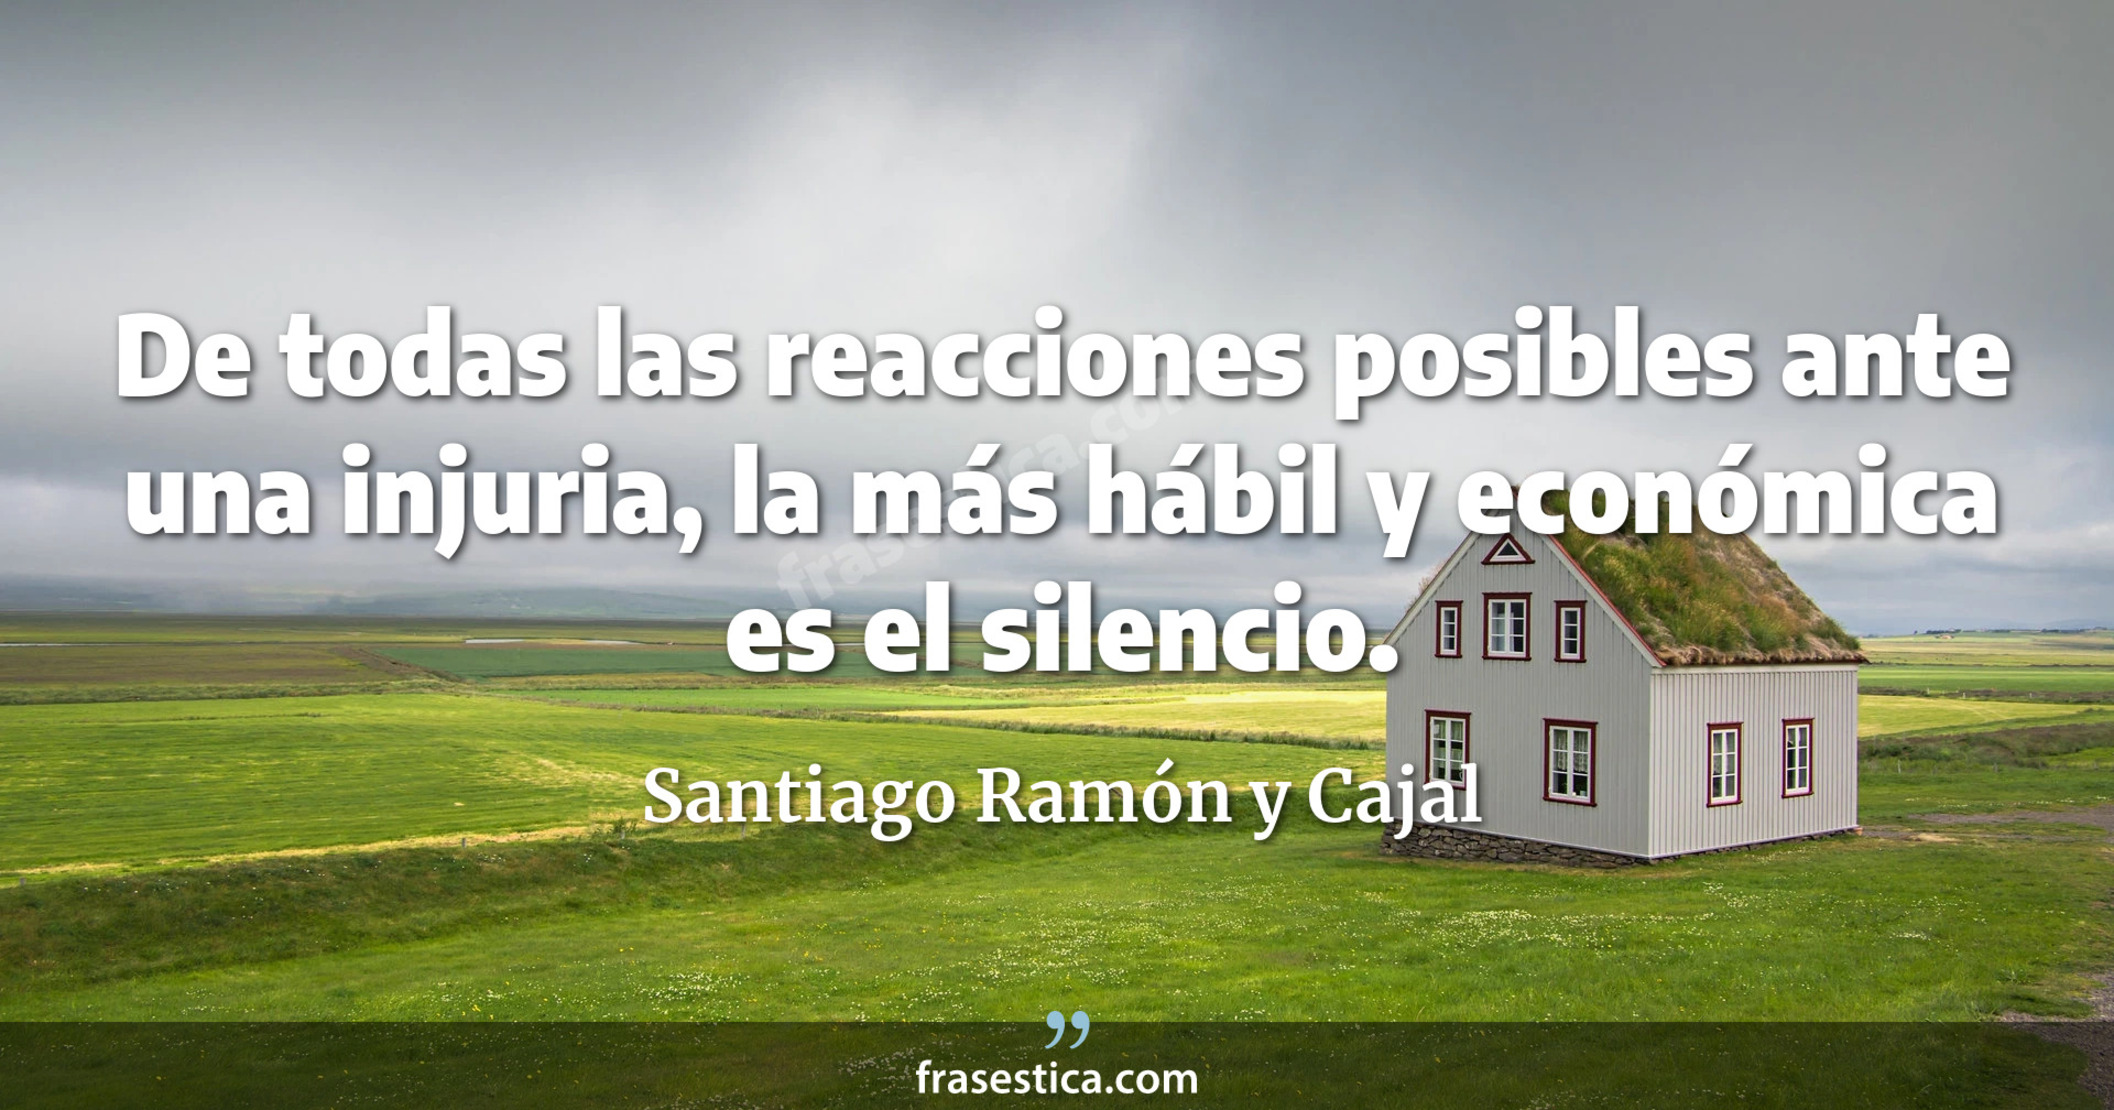 De todas las reacciones posibles ante una injuria, la más hábil y económica es el silencio. - Santiago Ramón y Cajal